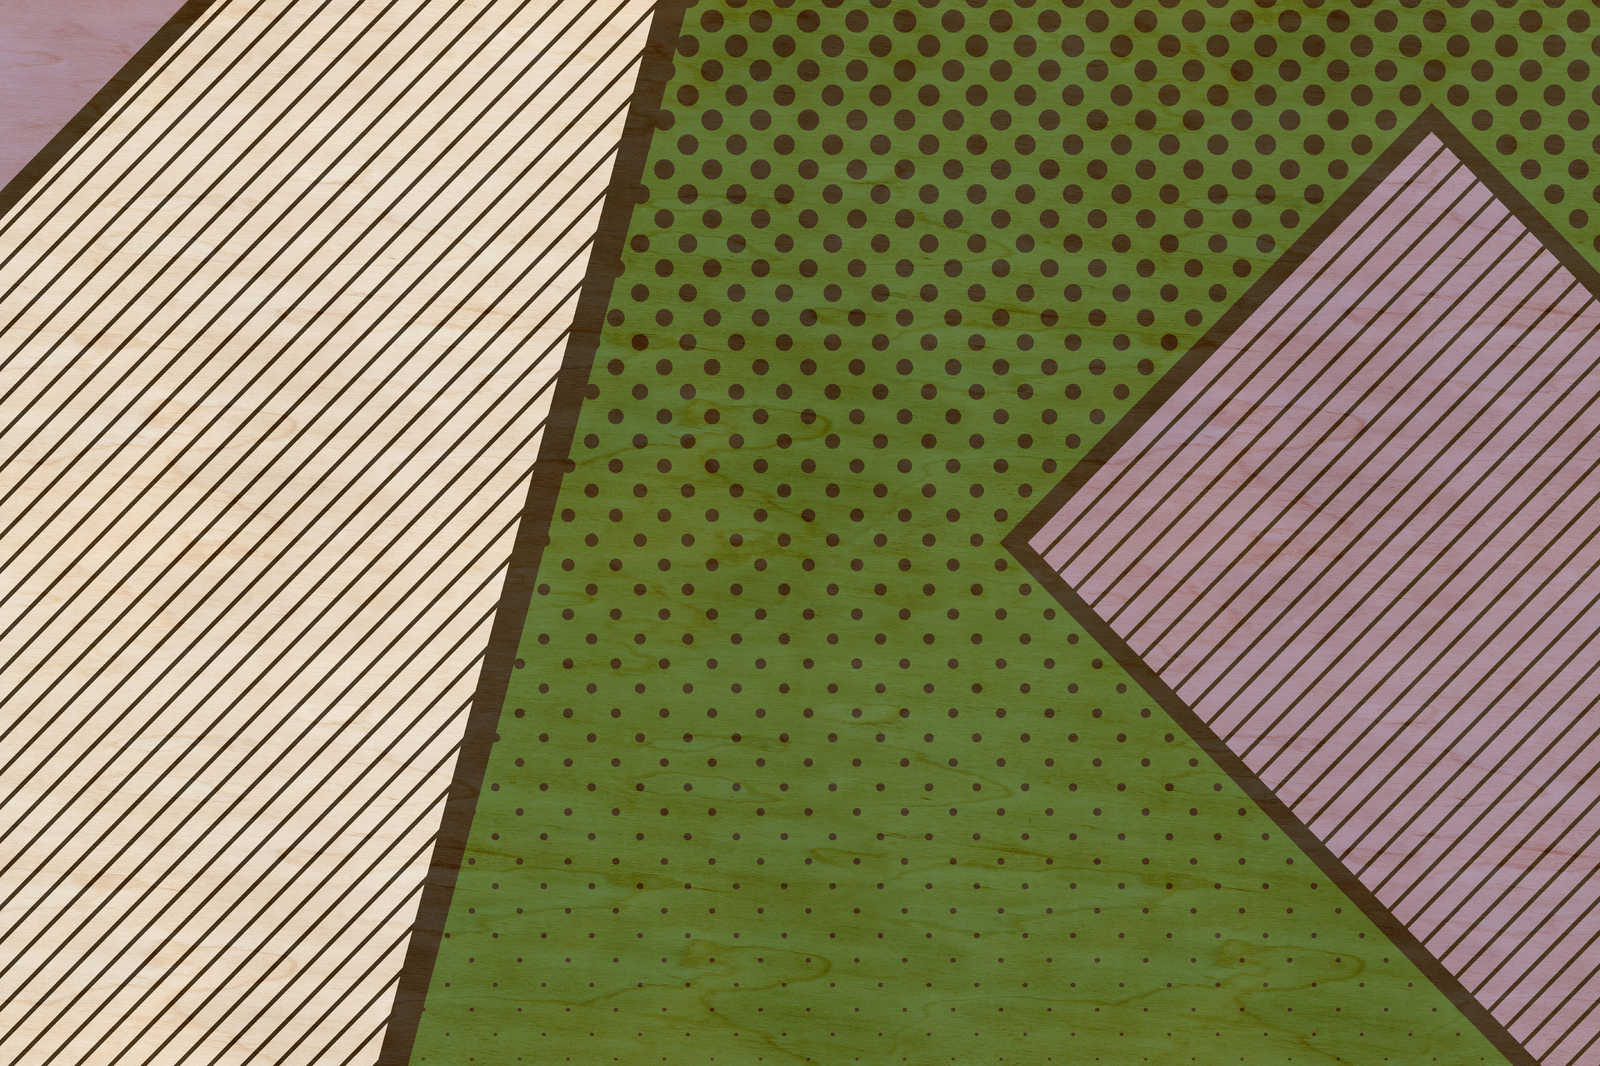             Bird gang 3 - Lienzo abstracto en estructura de madera contrachapada con zonas multicolores - 0,90 m x 0,60 m
        